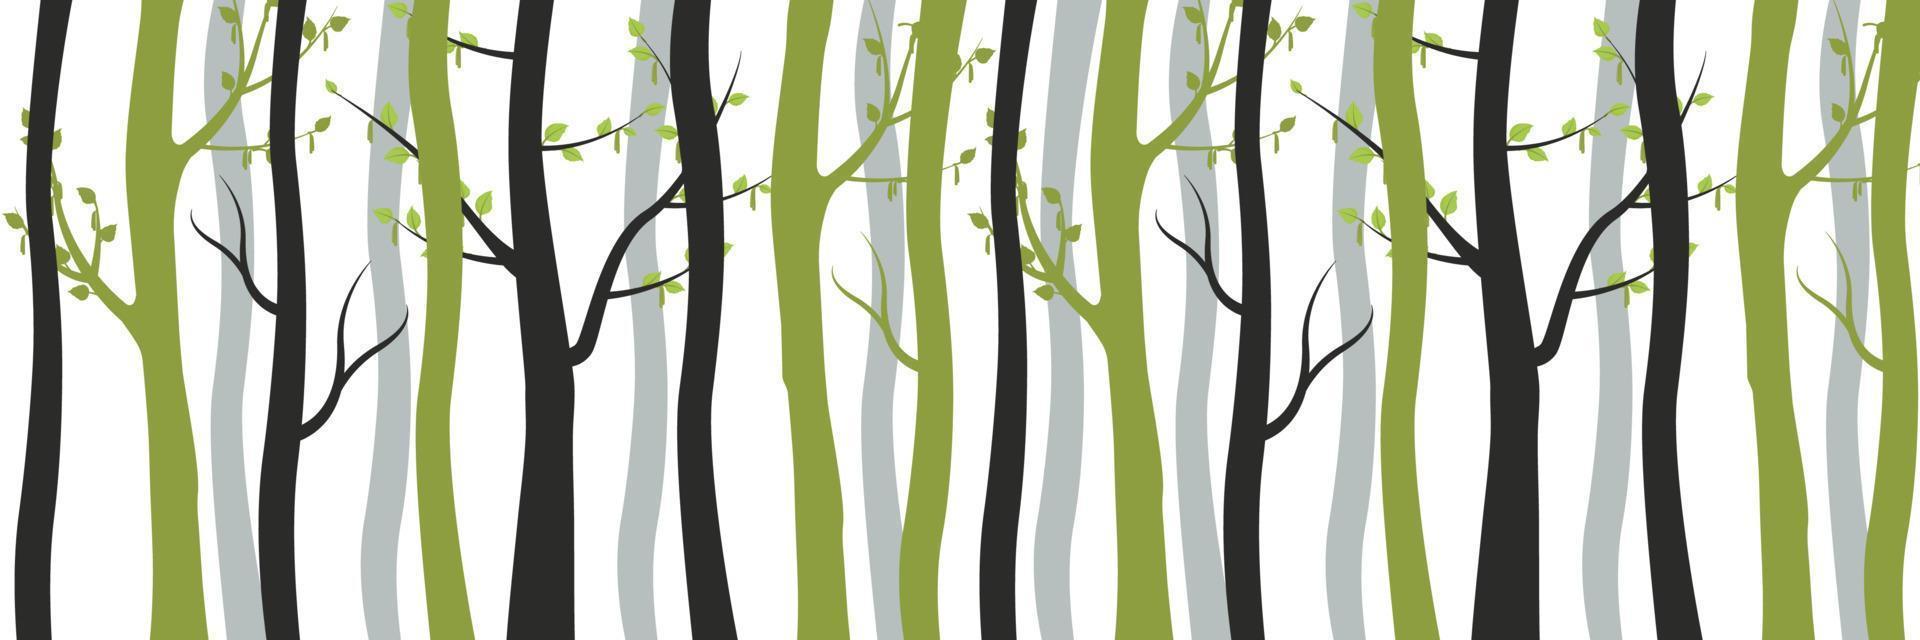 verde e secco nero alberi nel foresta sfondo. snello giovane betulle con fioritura le foglie e vecchio morto tronchi intrecciate. vettore